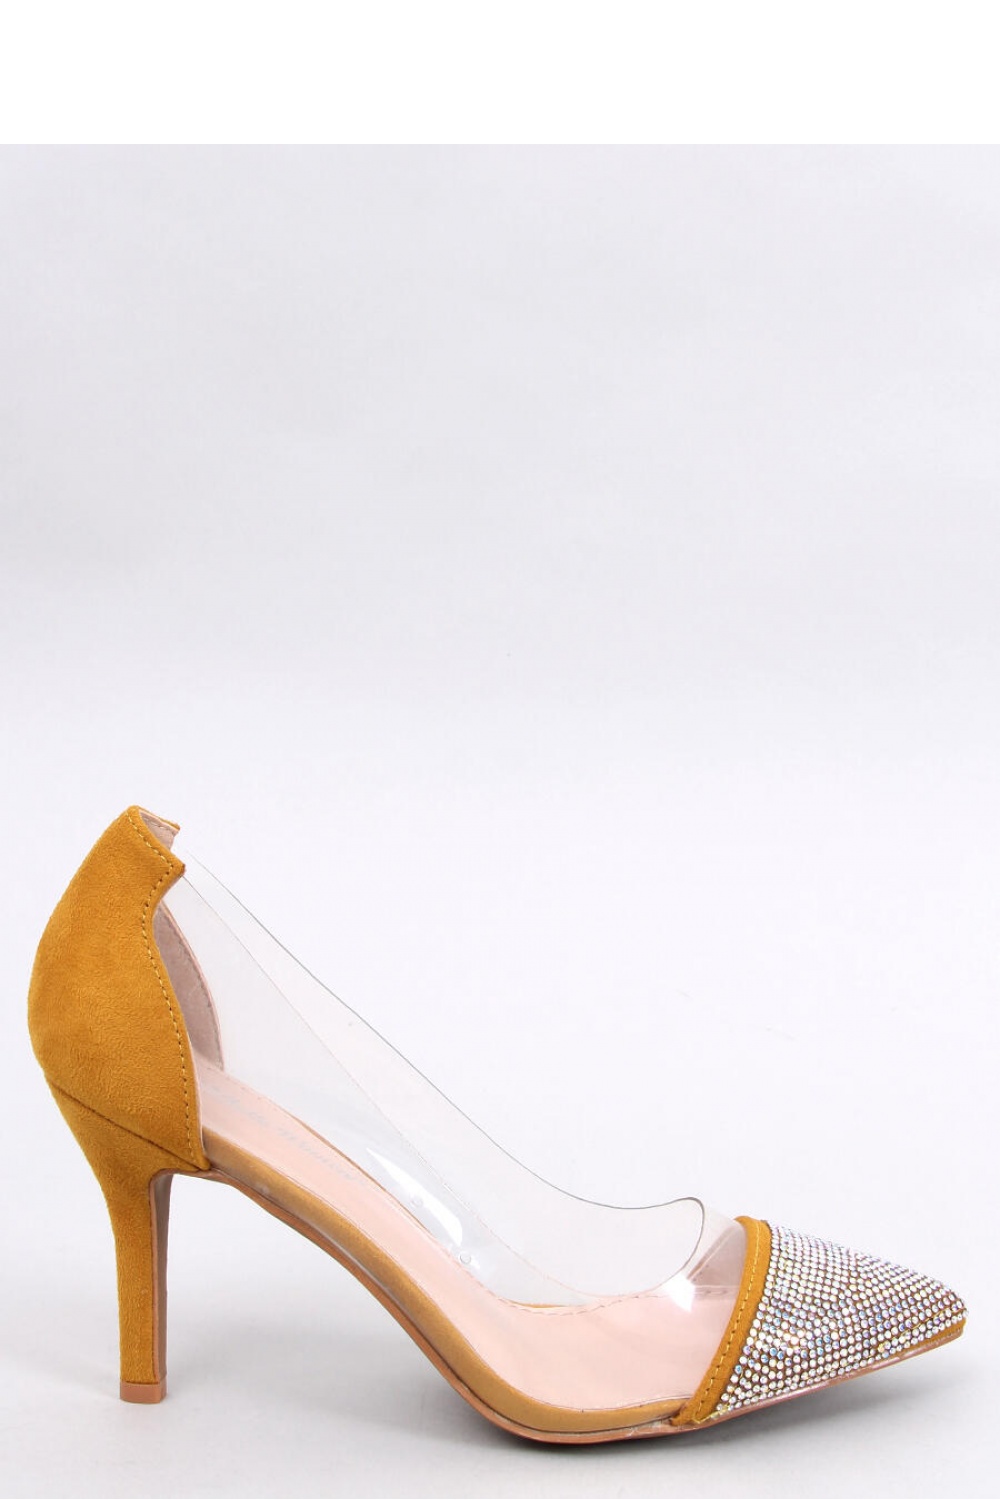 High heels model 190334 Inello